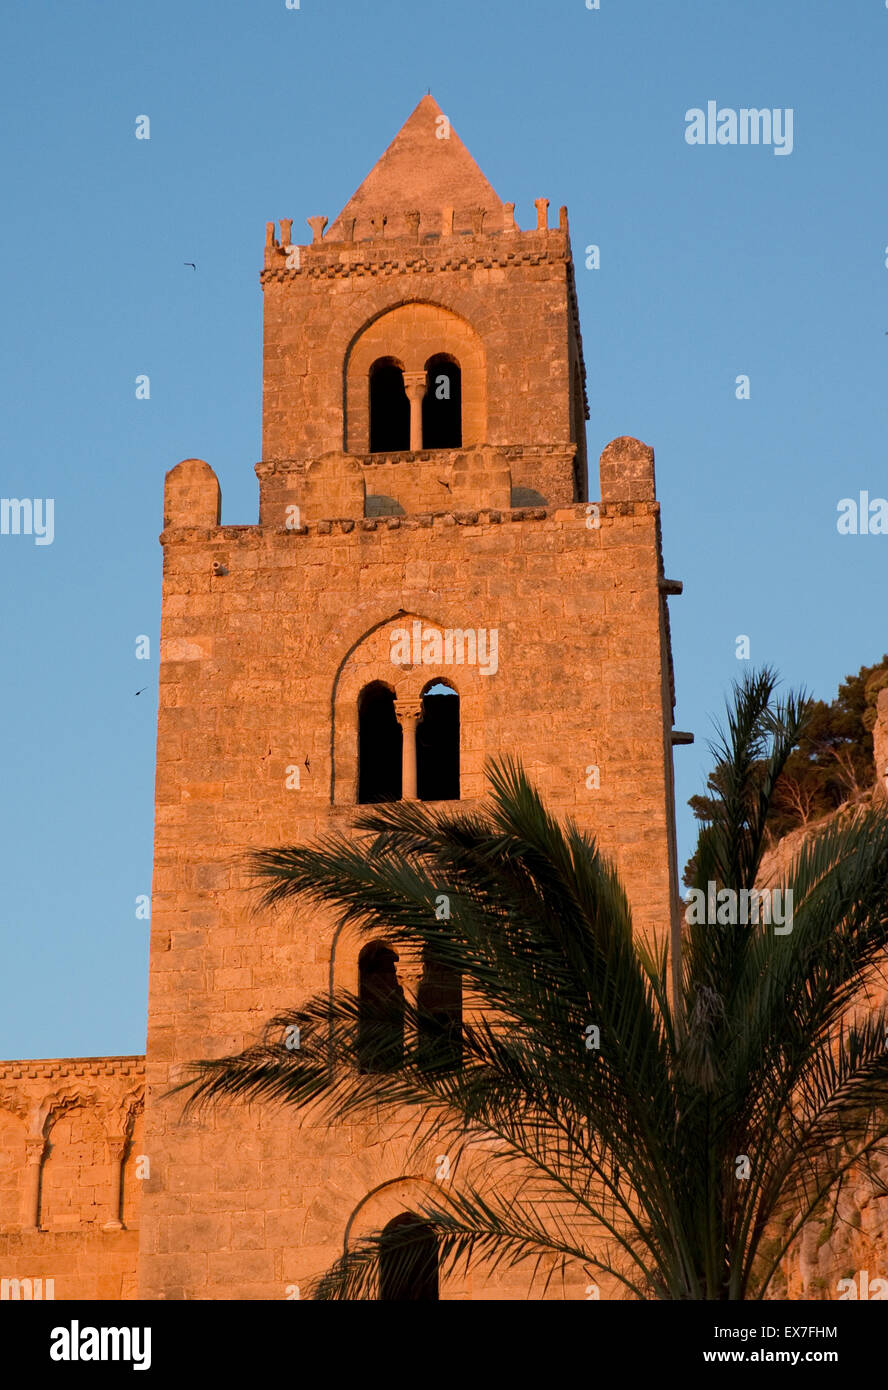 Cattedrale-basilica di Cefalù, Sicilia, Italia Foto Stock